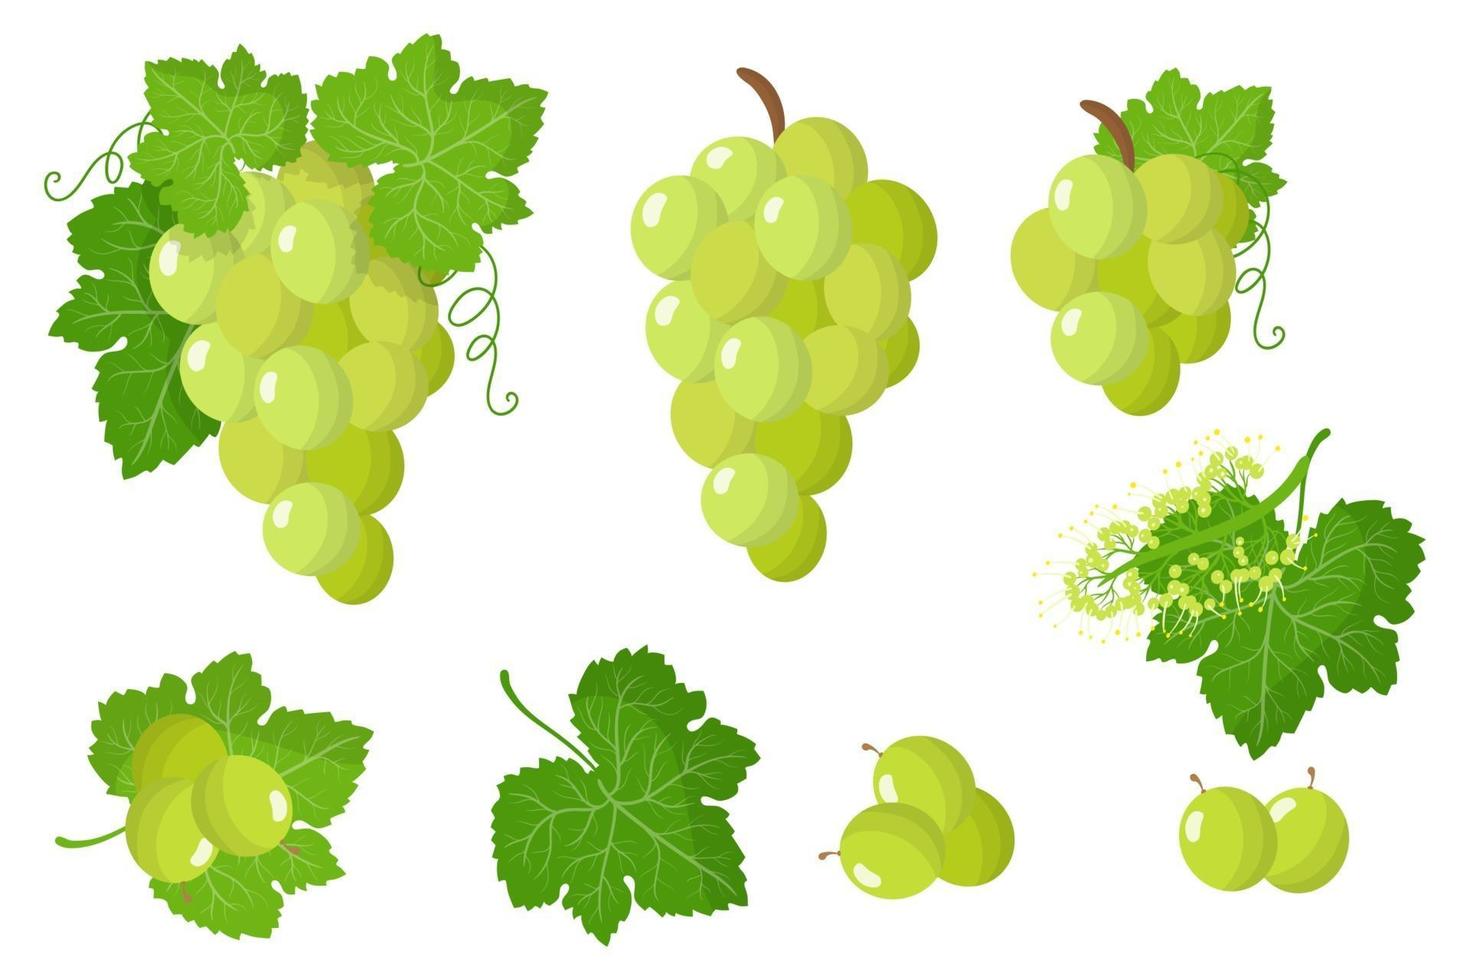 conjunto de ilustrações com frutas exóticas de uva branca, flores e folhas isoladas em um fundo branco. vetor